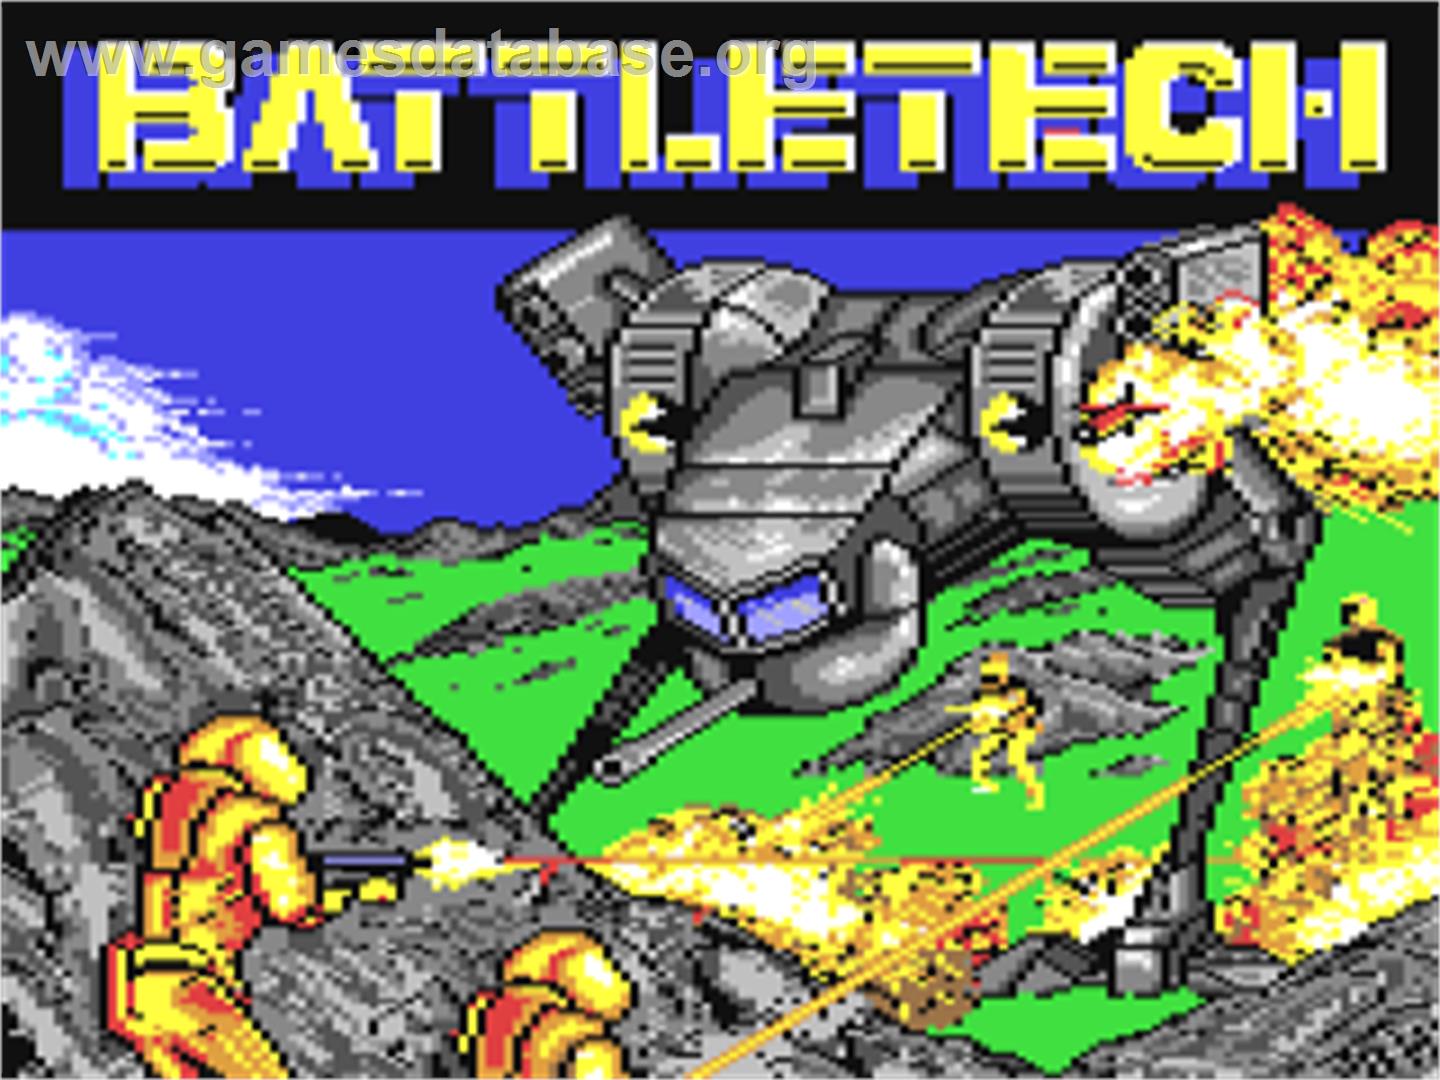 BattleTech: The Crescent Hawk's Inception - Commodore 64 - Artwork - Title Screen